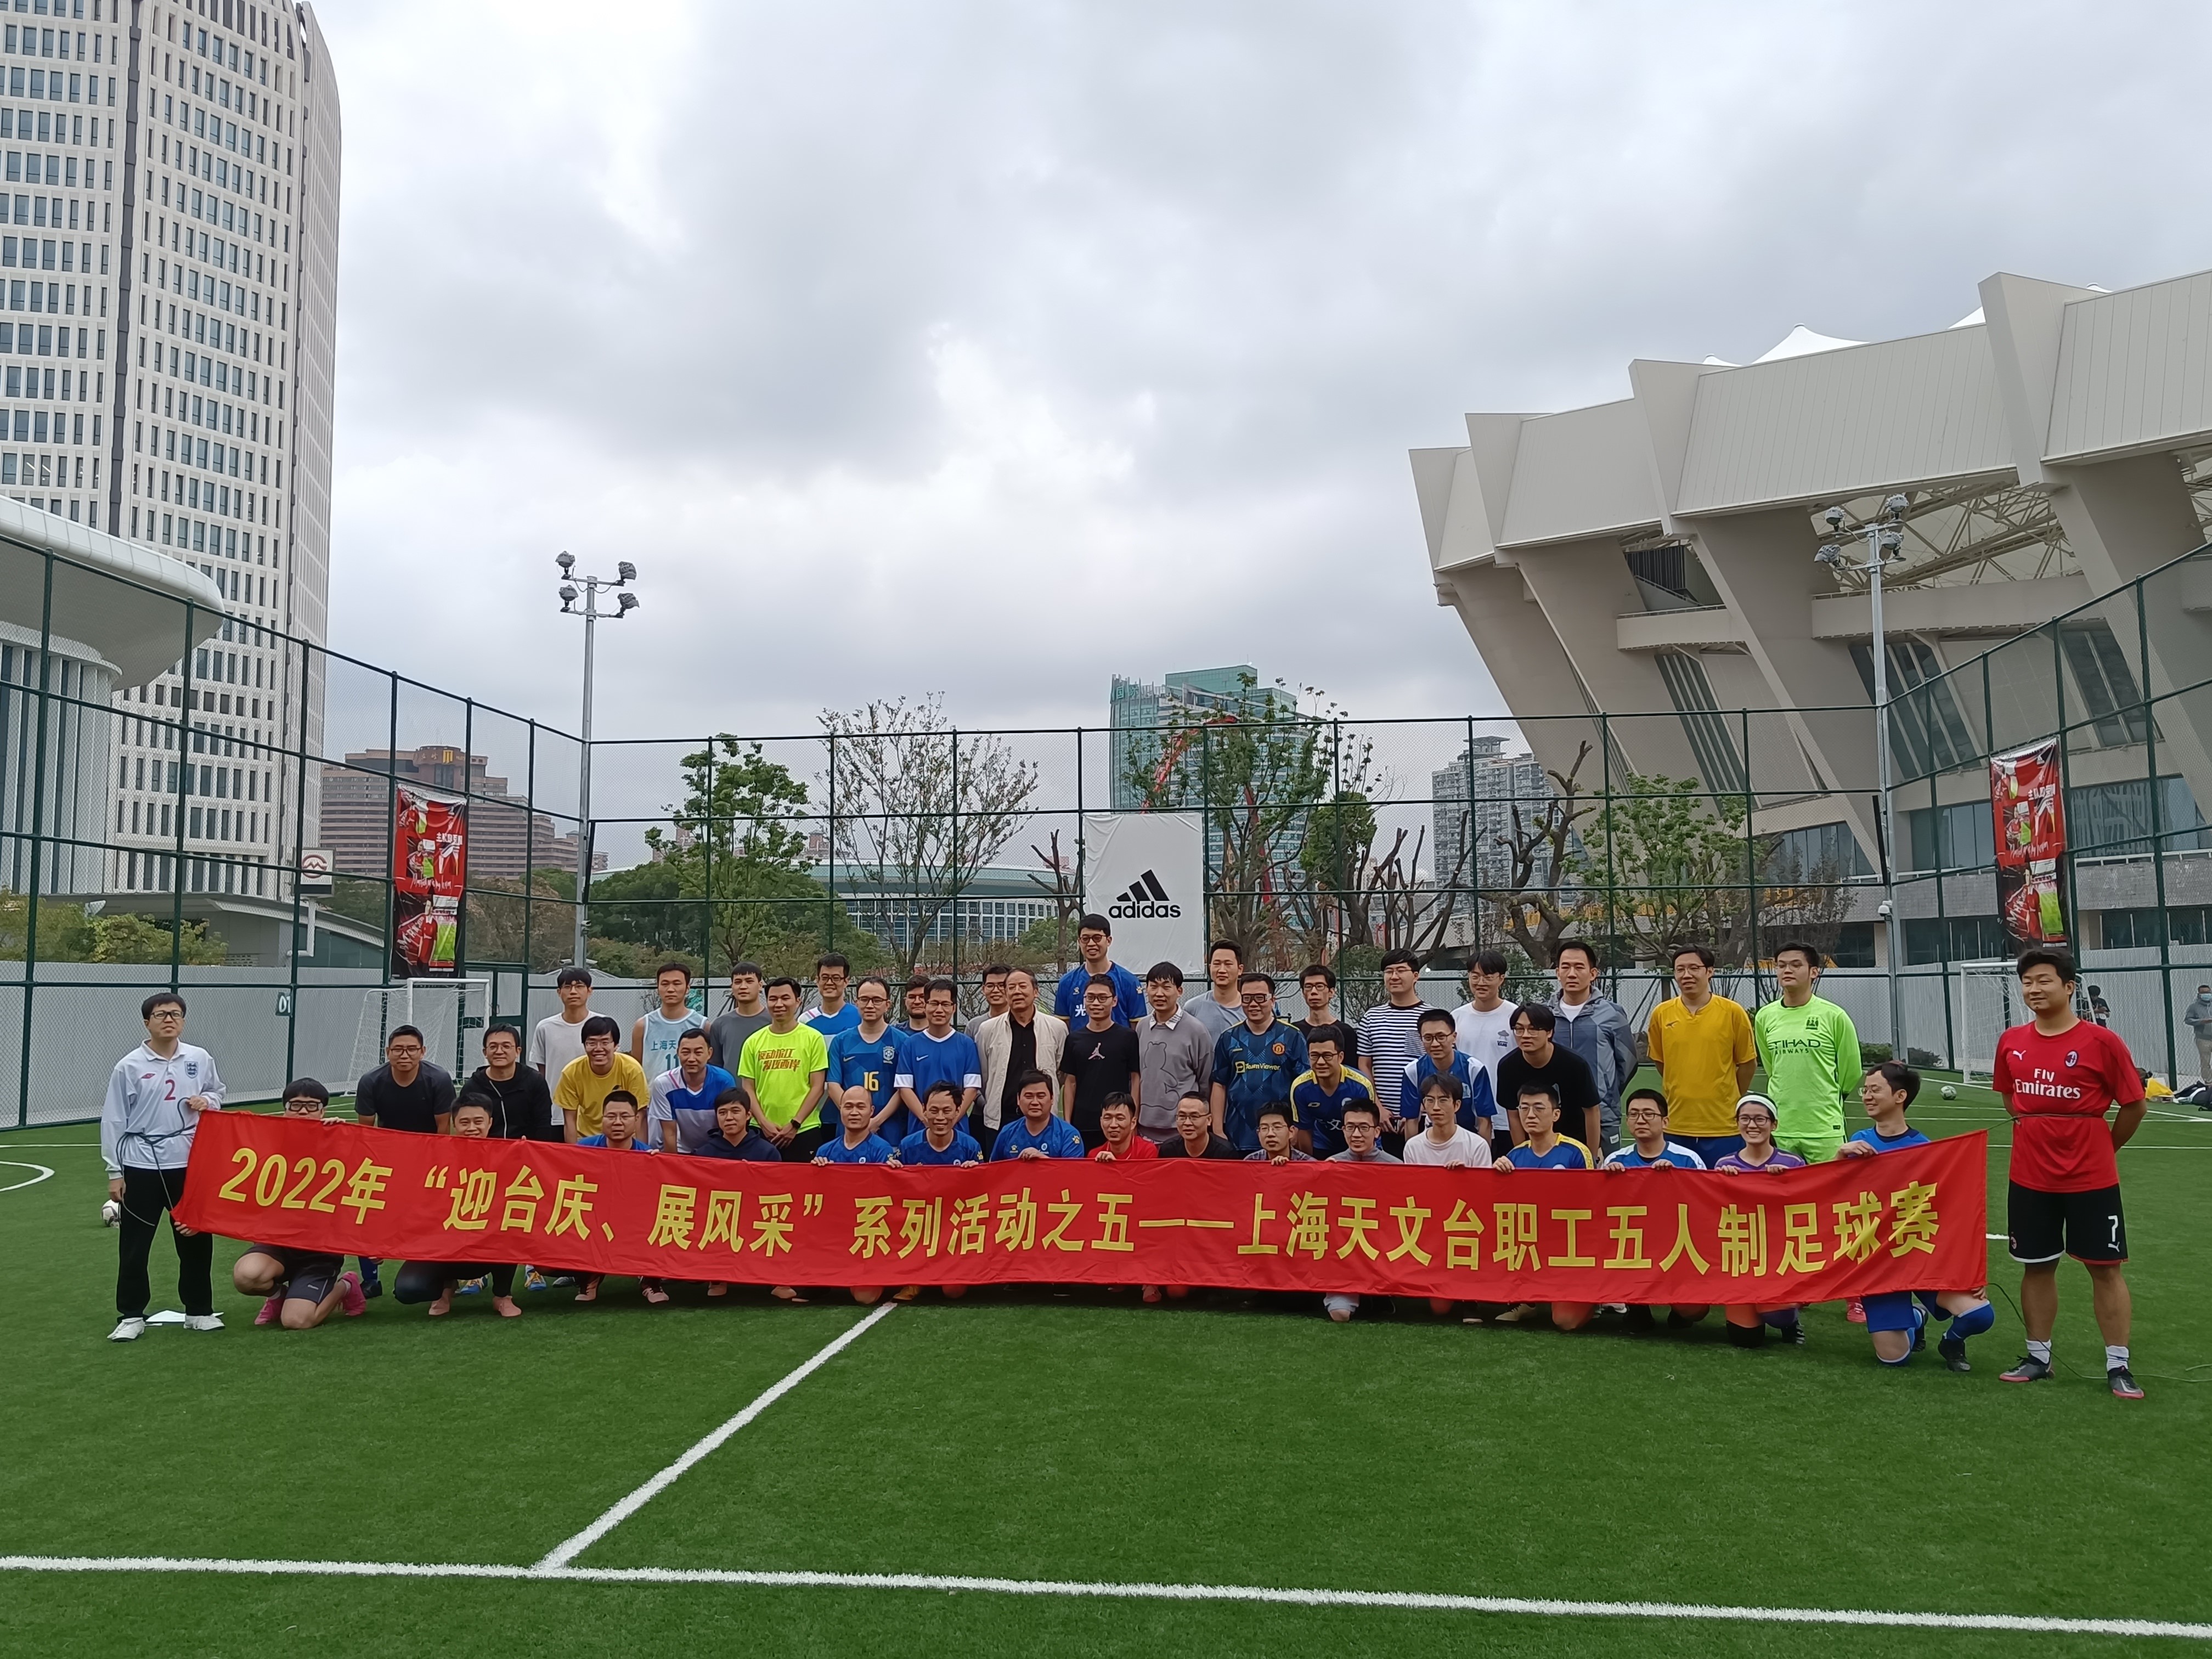 “迎台庆、展风采”系列活动之五——台工会举办2022年职工五人制足球比赛